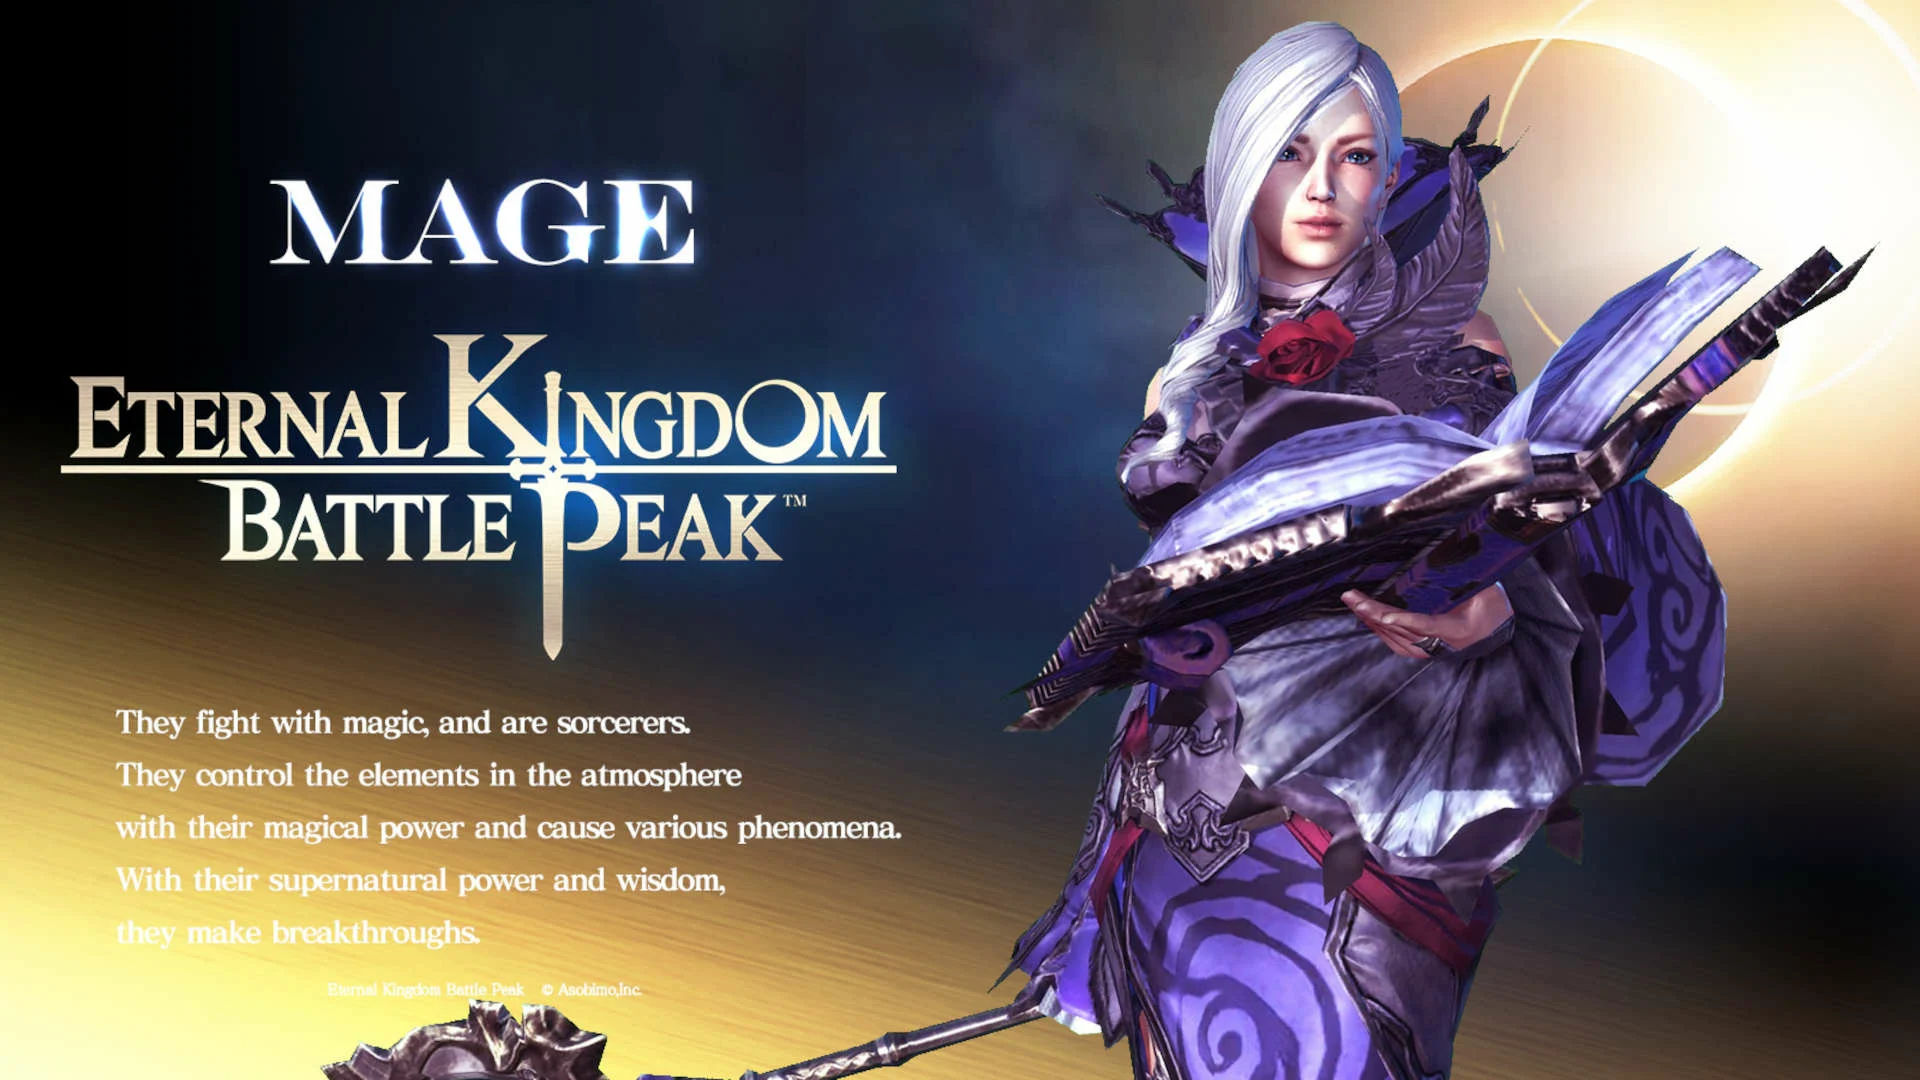 Mage class in Eternal Kingdom Battle Peak